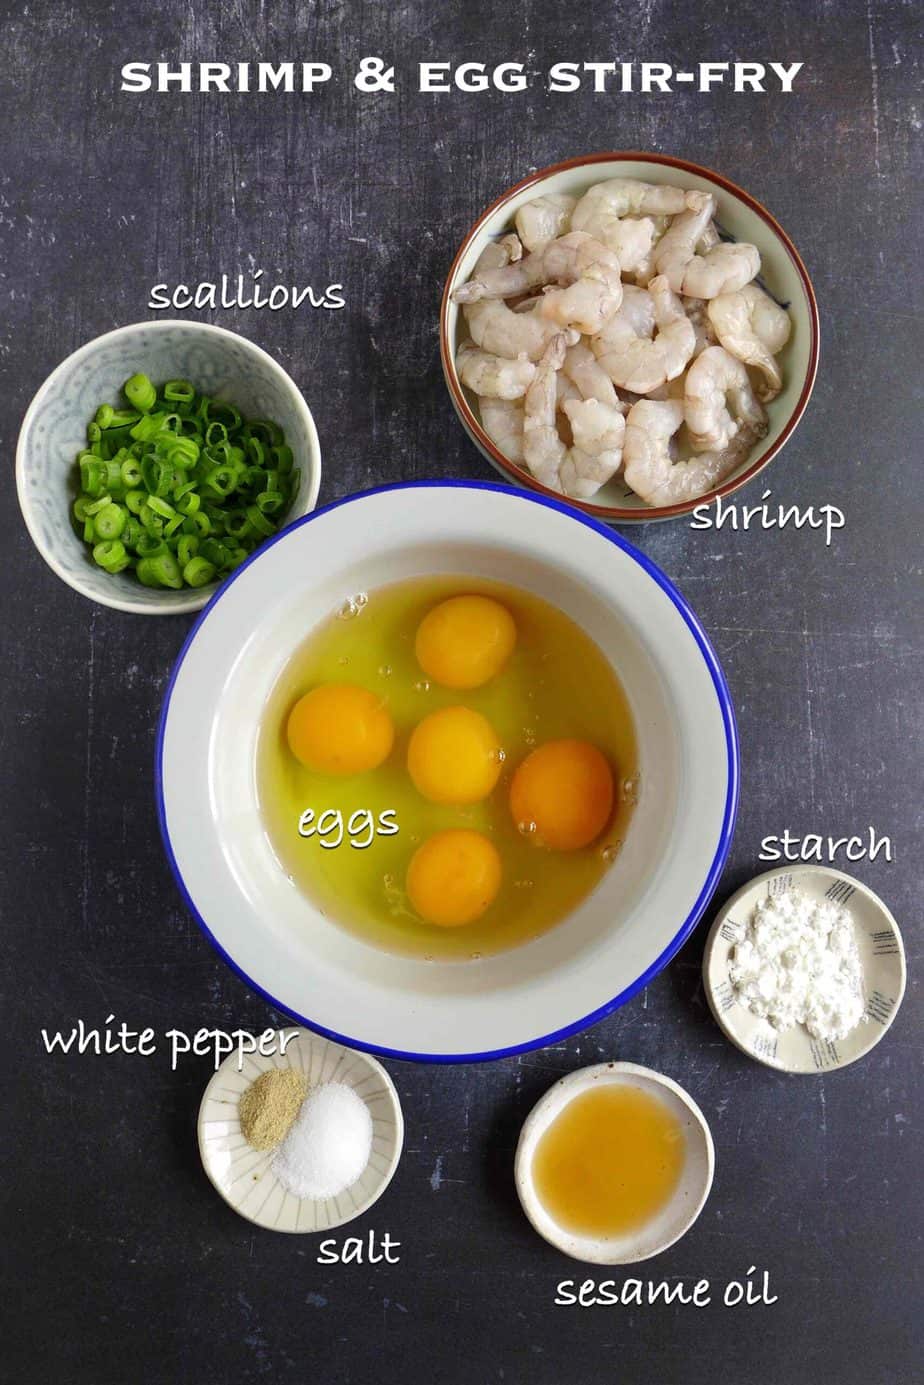 Ingredients for making shrimp and egg stir-fry